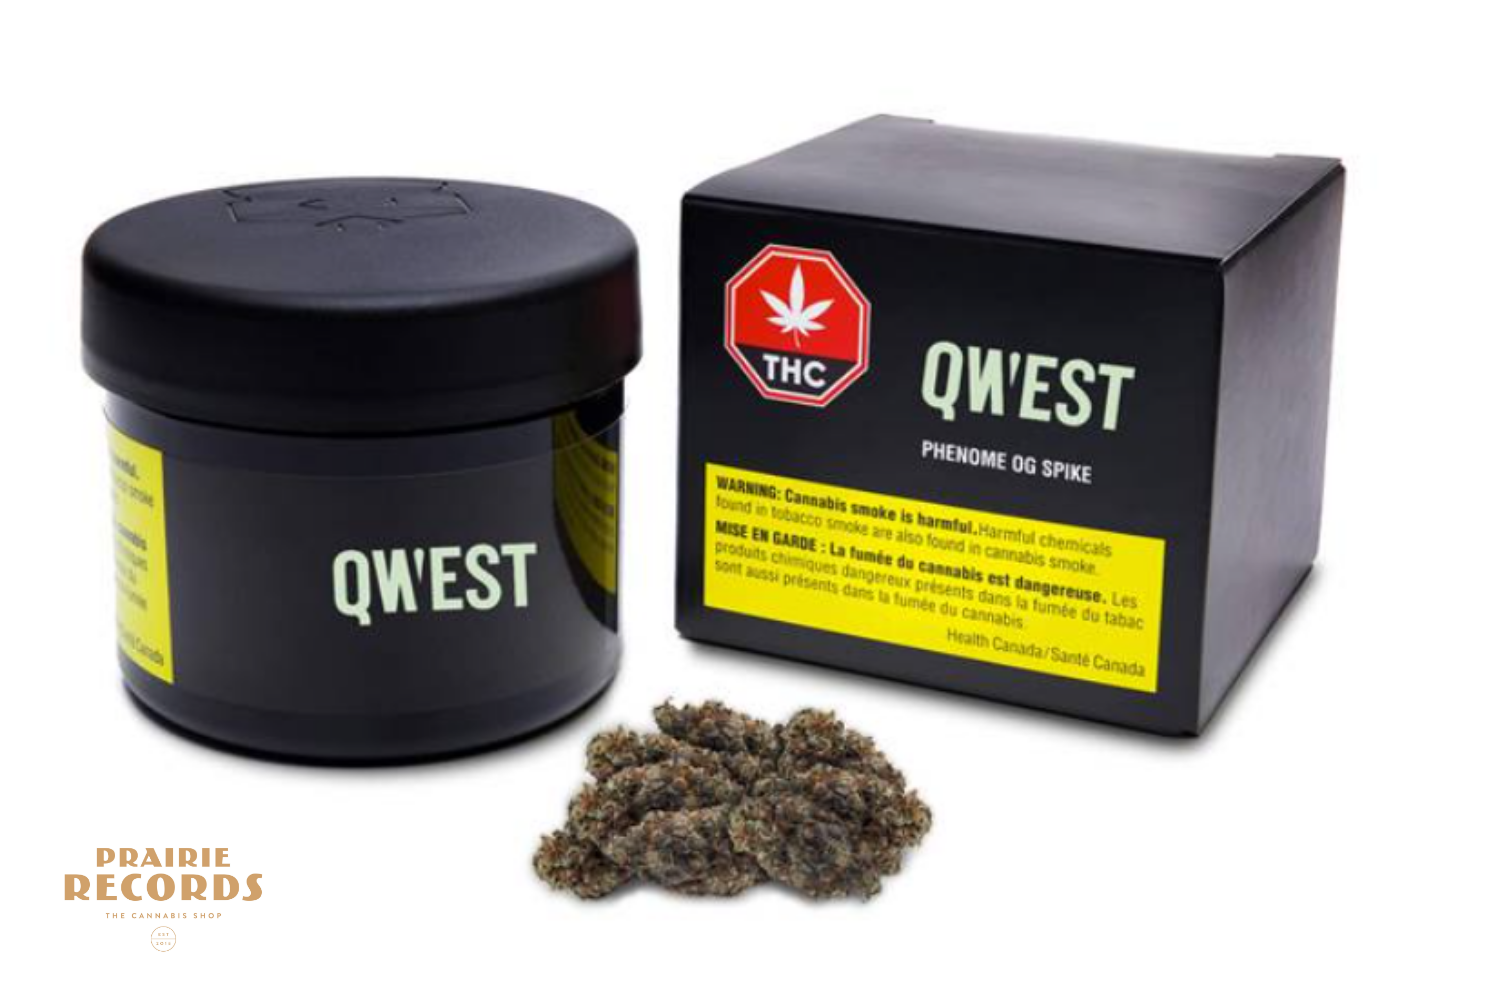 Qwest-Prairie-records-calgary-cannabis